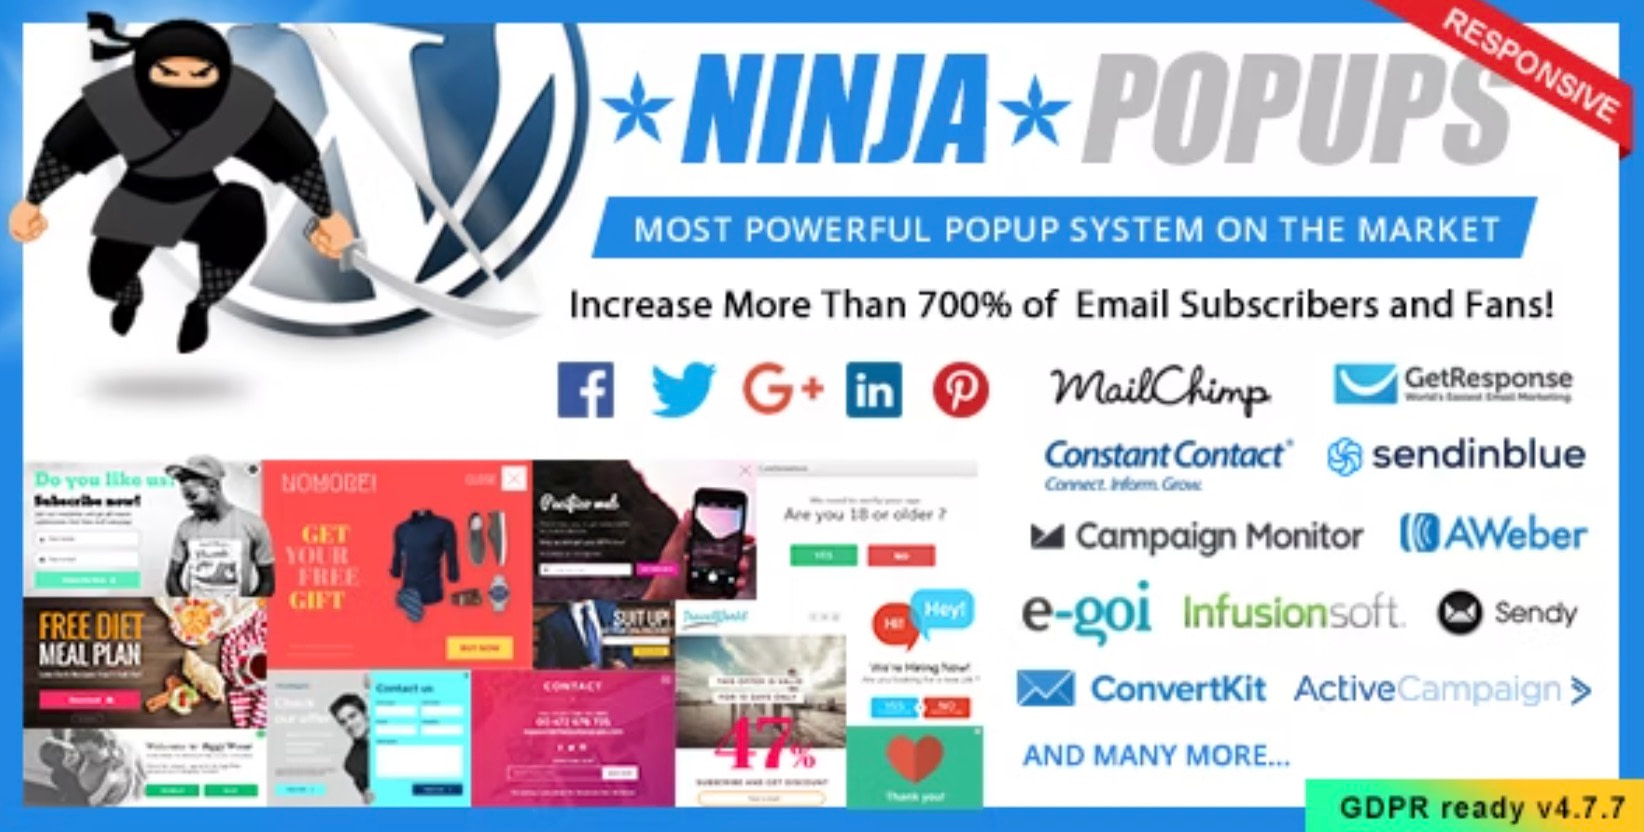 ninja popups is one of the best WordPress newsletter plugins